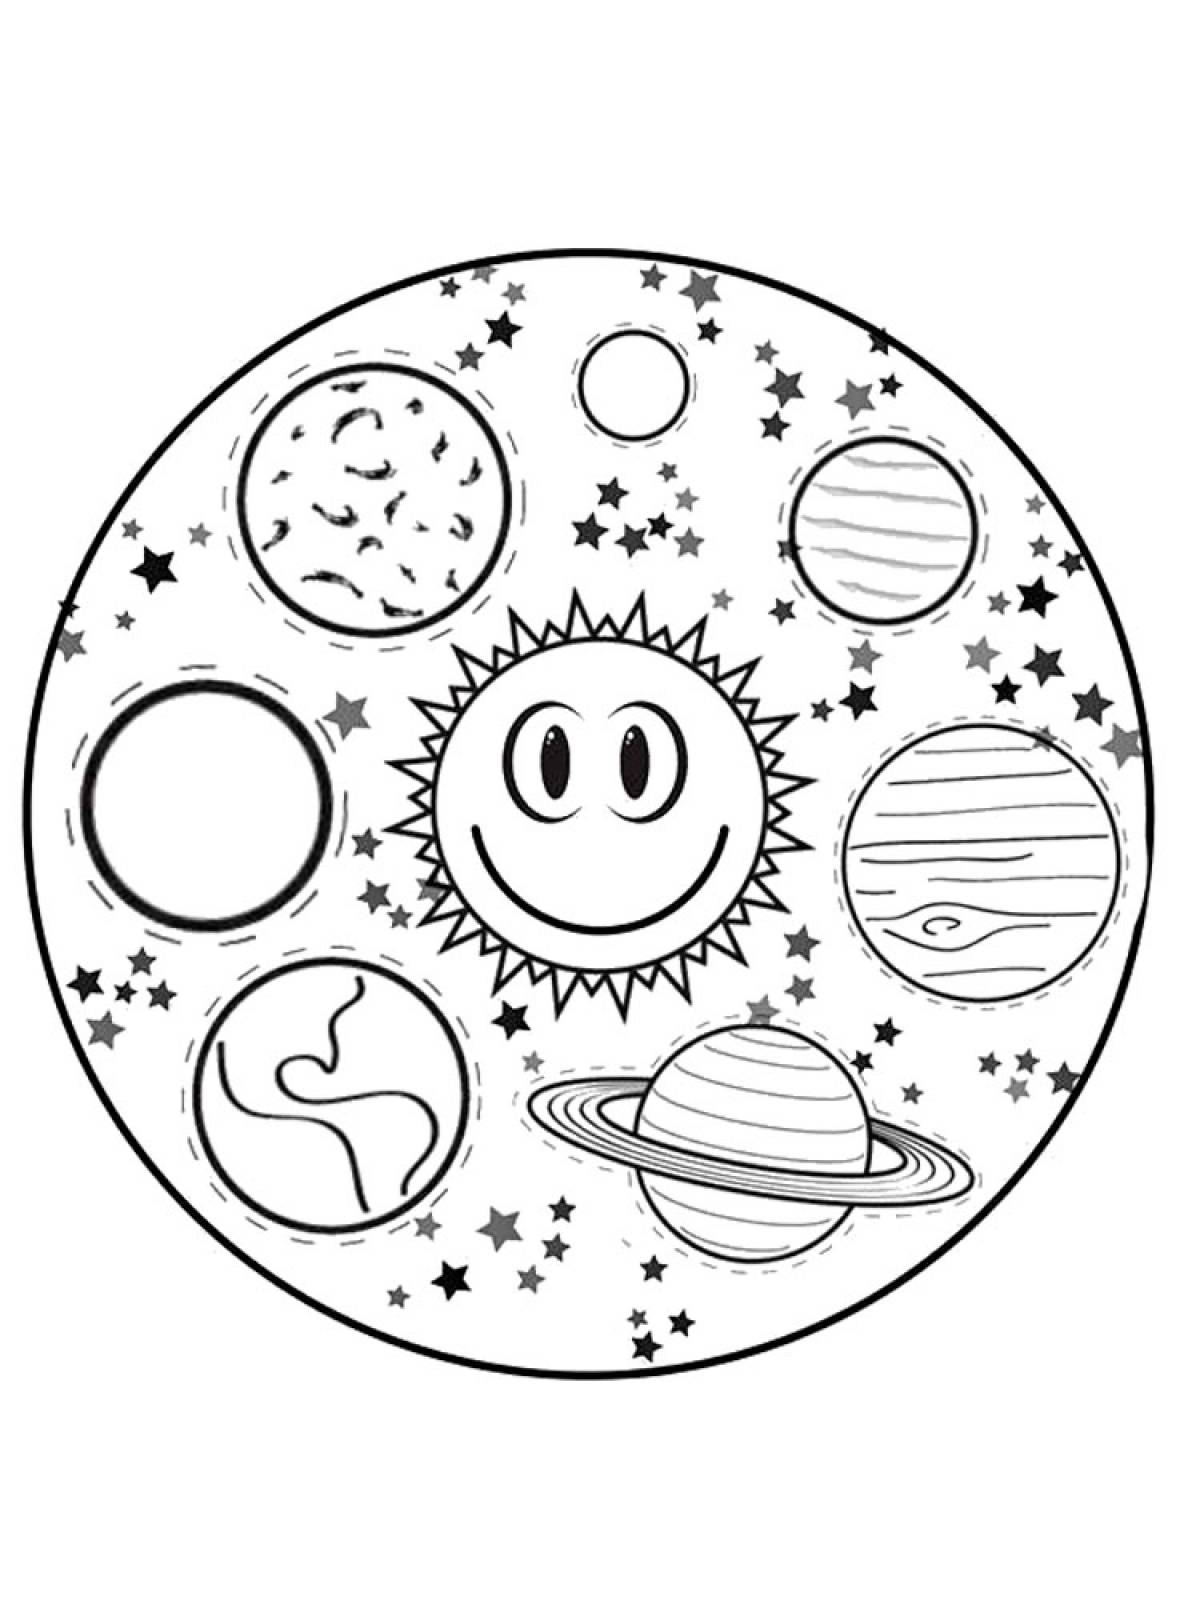 Планеты солнечной системы для детей распечатать. Раскраска планеты солнечной системы для детей. Солнечная система раскраска для детей. Космос раскраска для детей. Планеты солнечной системы раскраска.